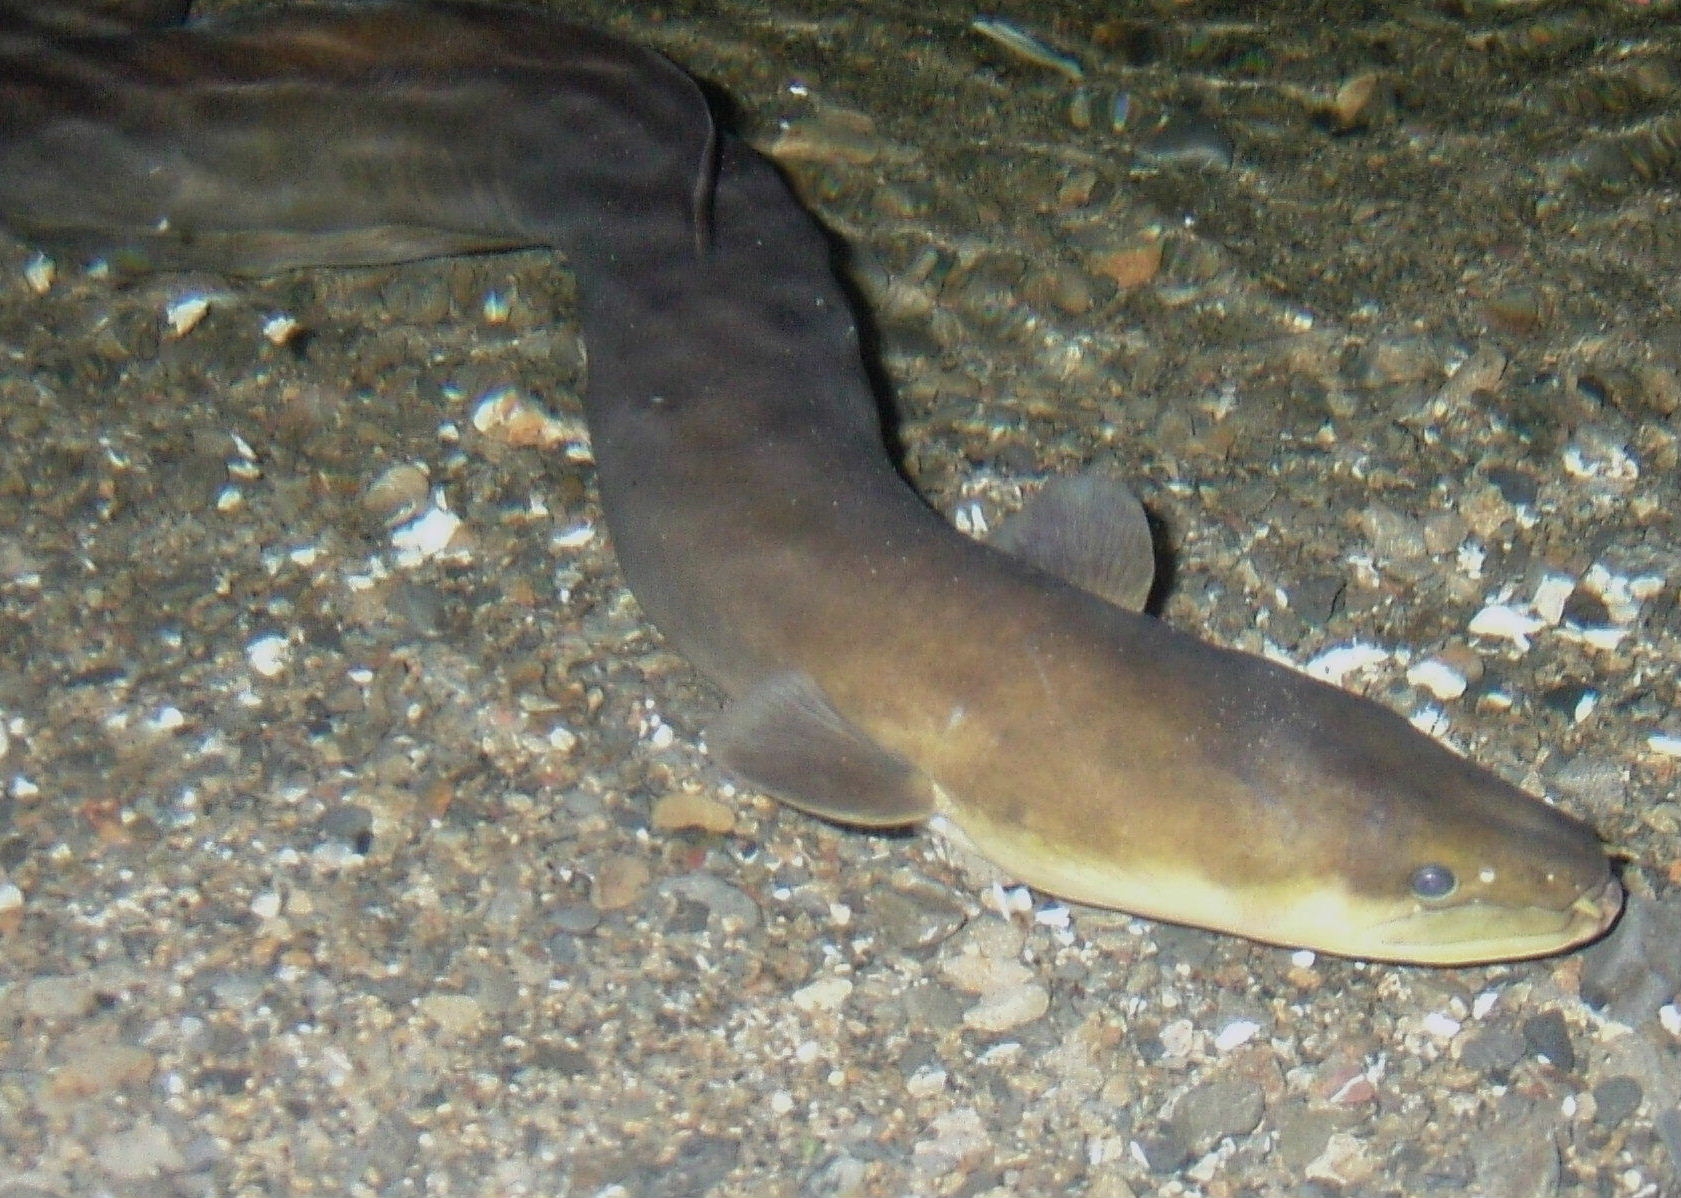 NZ eel